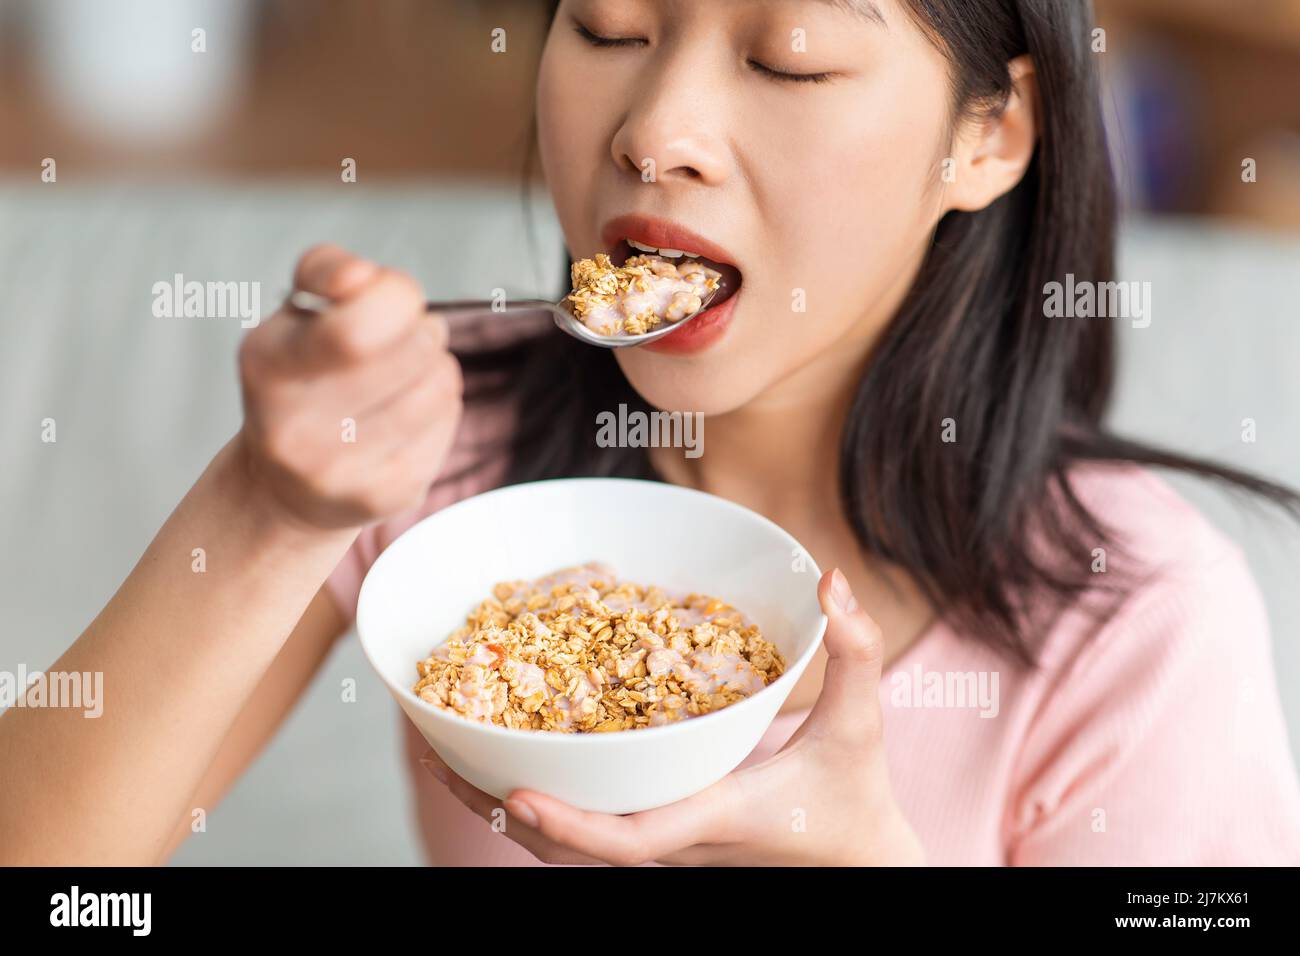 Gesunde Ernährung Konzept. Koreanische Dame, die Müsli mit Joghurt isst, nahrhaftes Frühstück zu Hause, Nahaufnahme Stockfoto